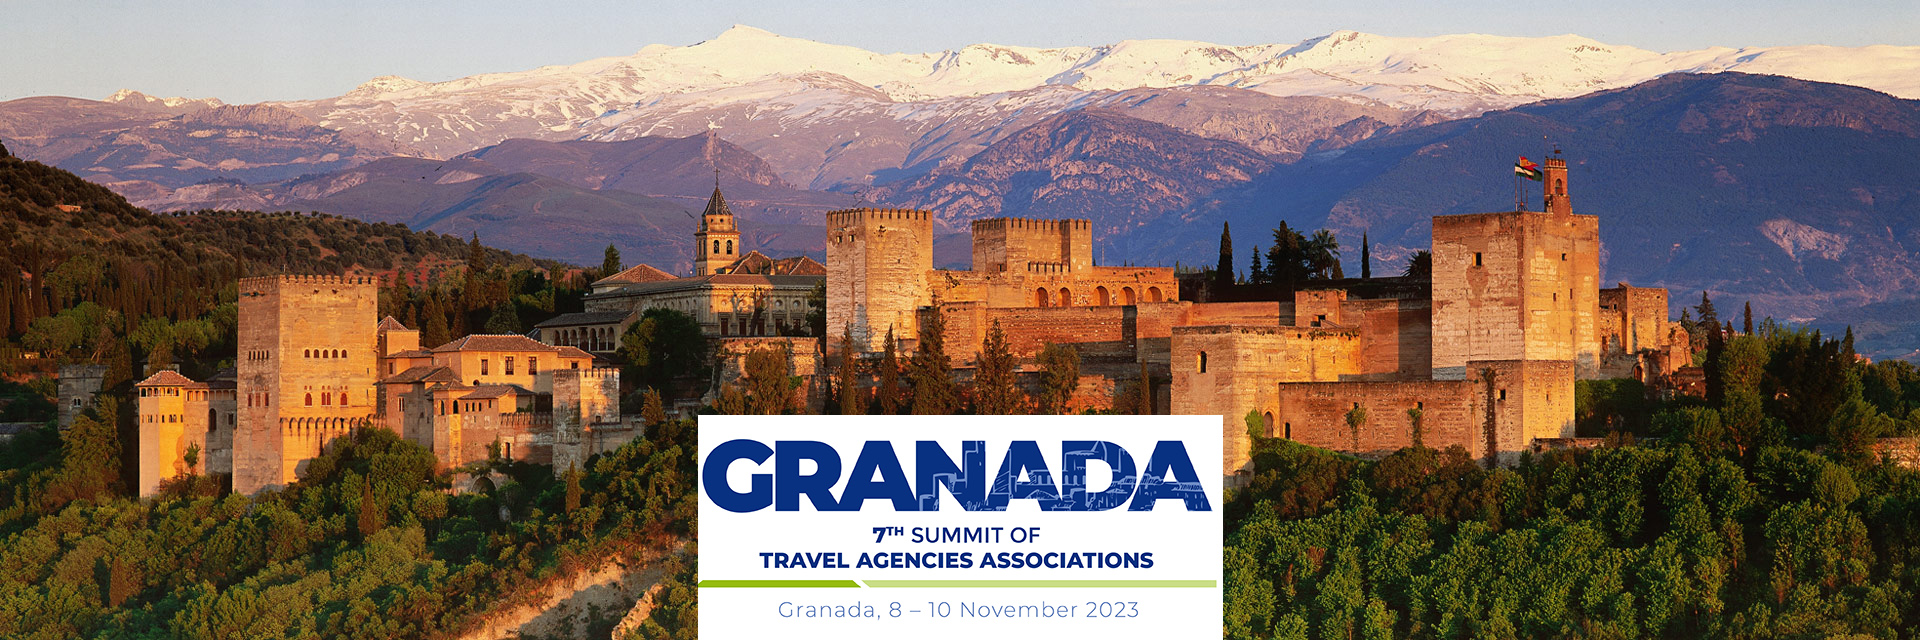 La 7ª Cumbre Mundial de Asociaciones de Agencias de Viajes se celebrará en Granada del 8 al 10 de noviembre